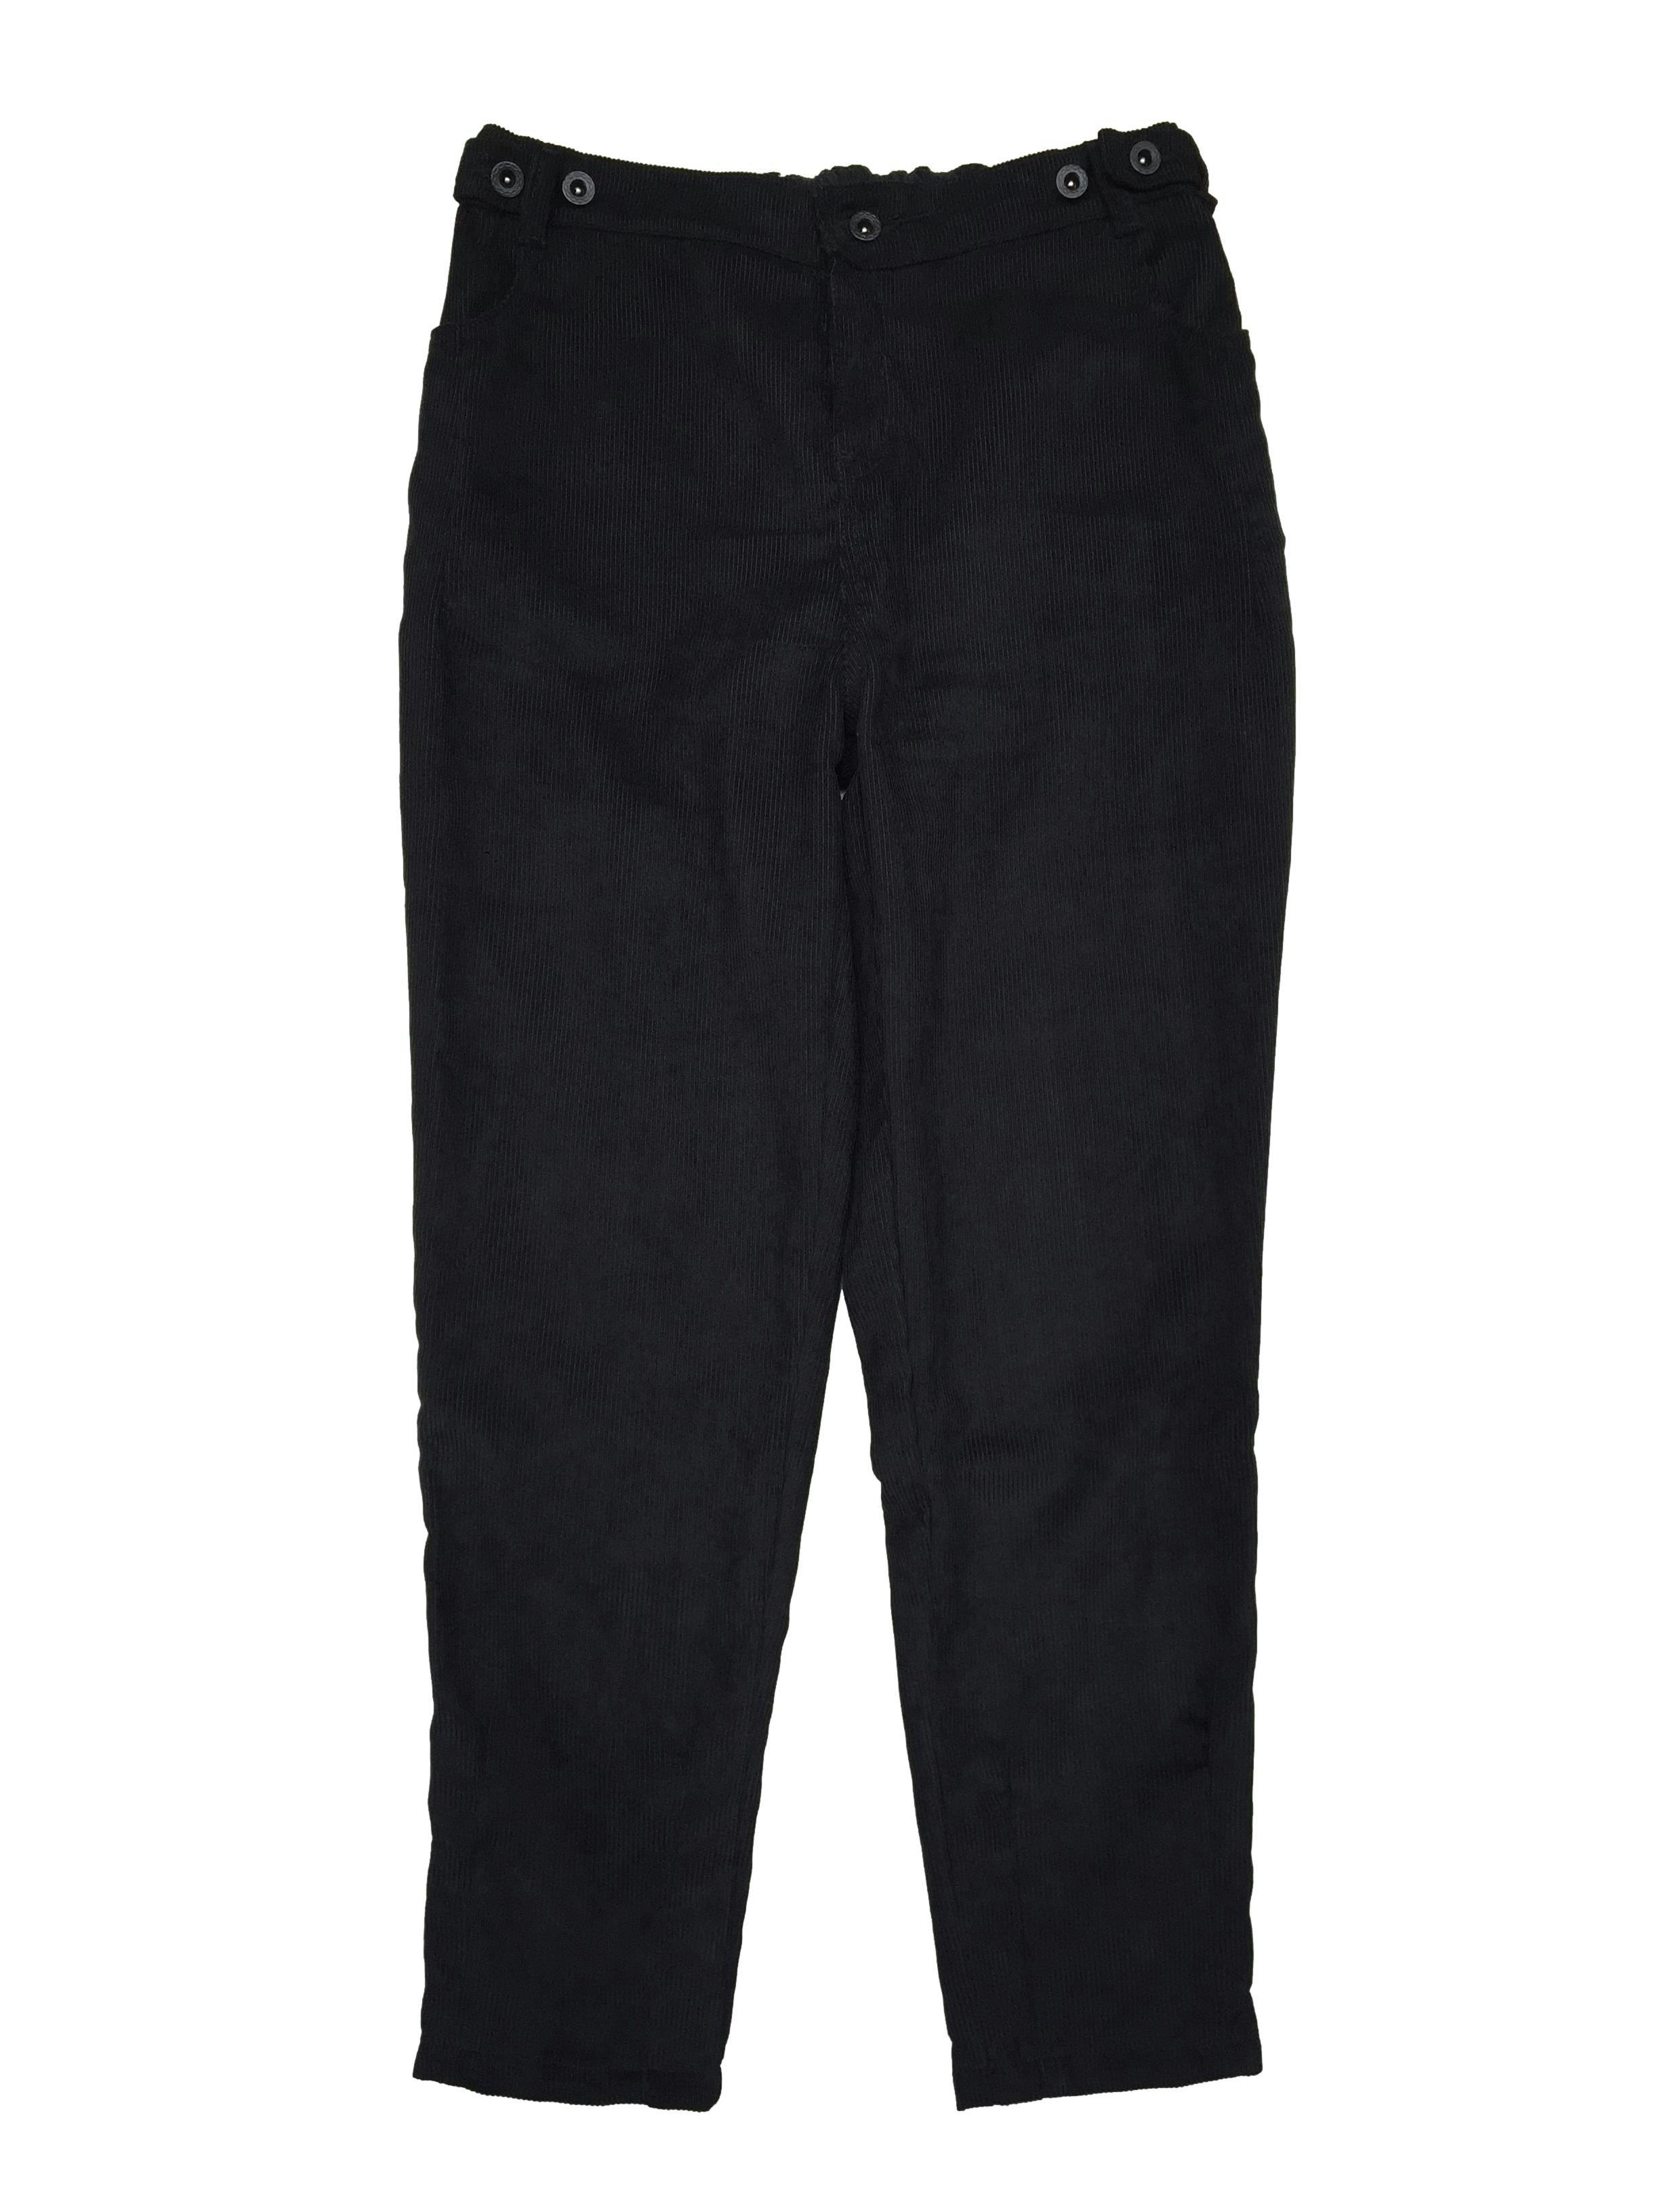 Pantalón de corduroy negro, cote recto con 4 bolsillos y pretina posterior elástica regulable con botones frontales. Cintura 80cm sin estirar, Largo 94cm.